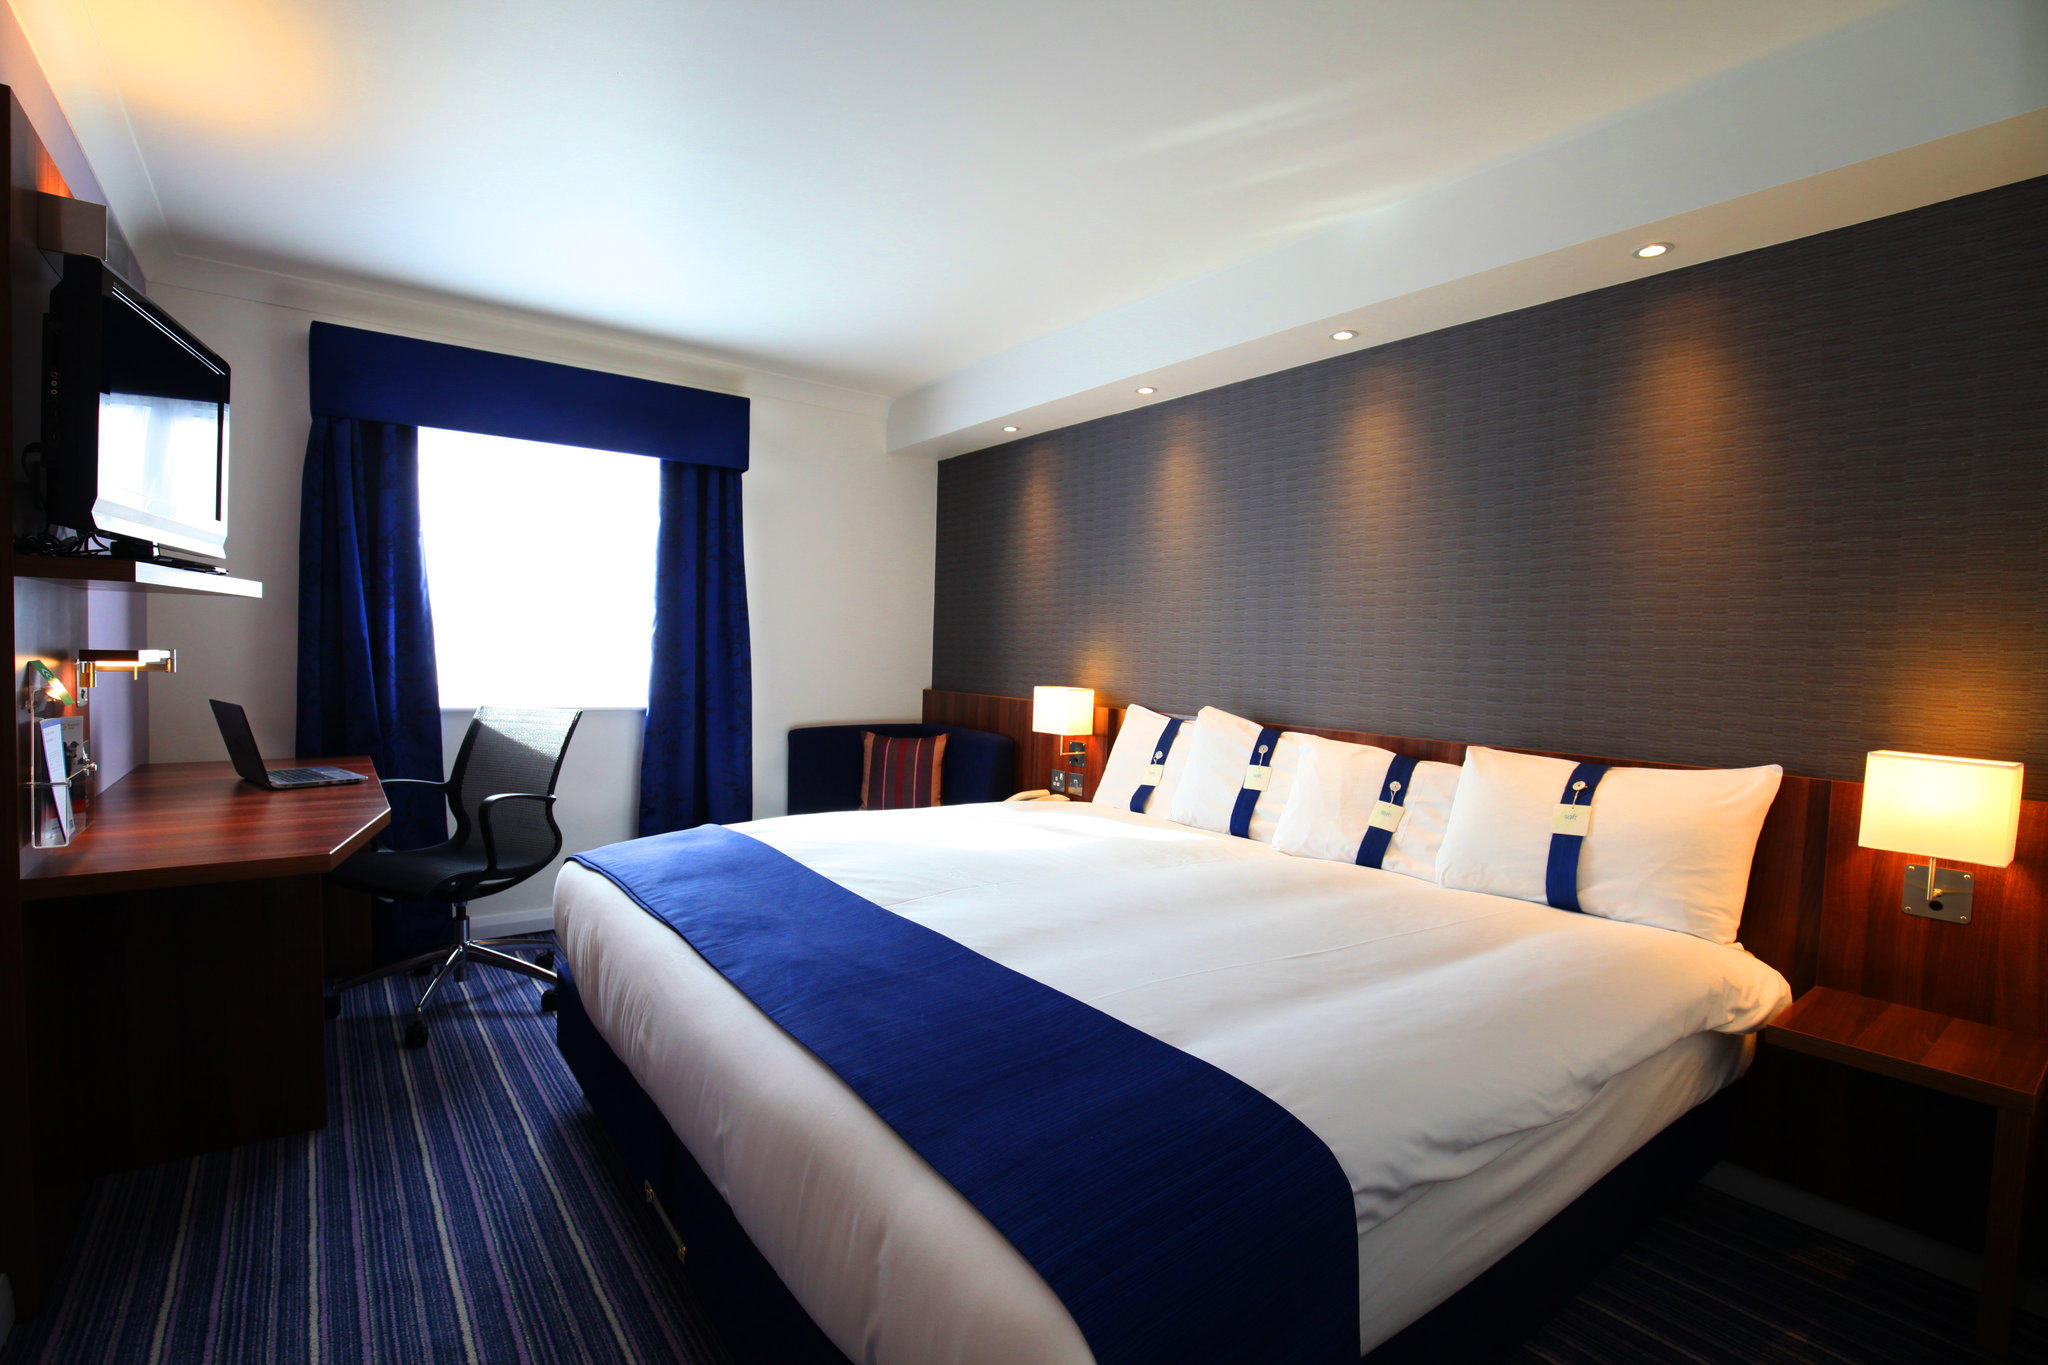 Holiday Inn Express London Gatwick - Crawley, an IHG Hotel Crawley 01293 525523